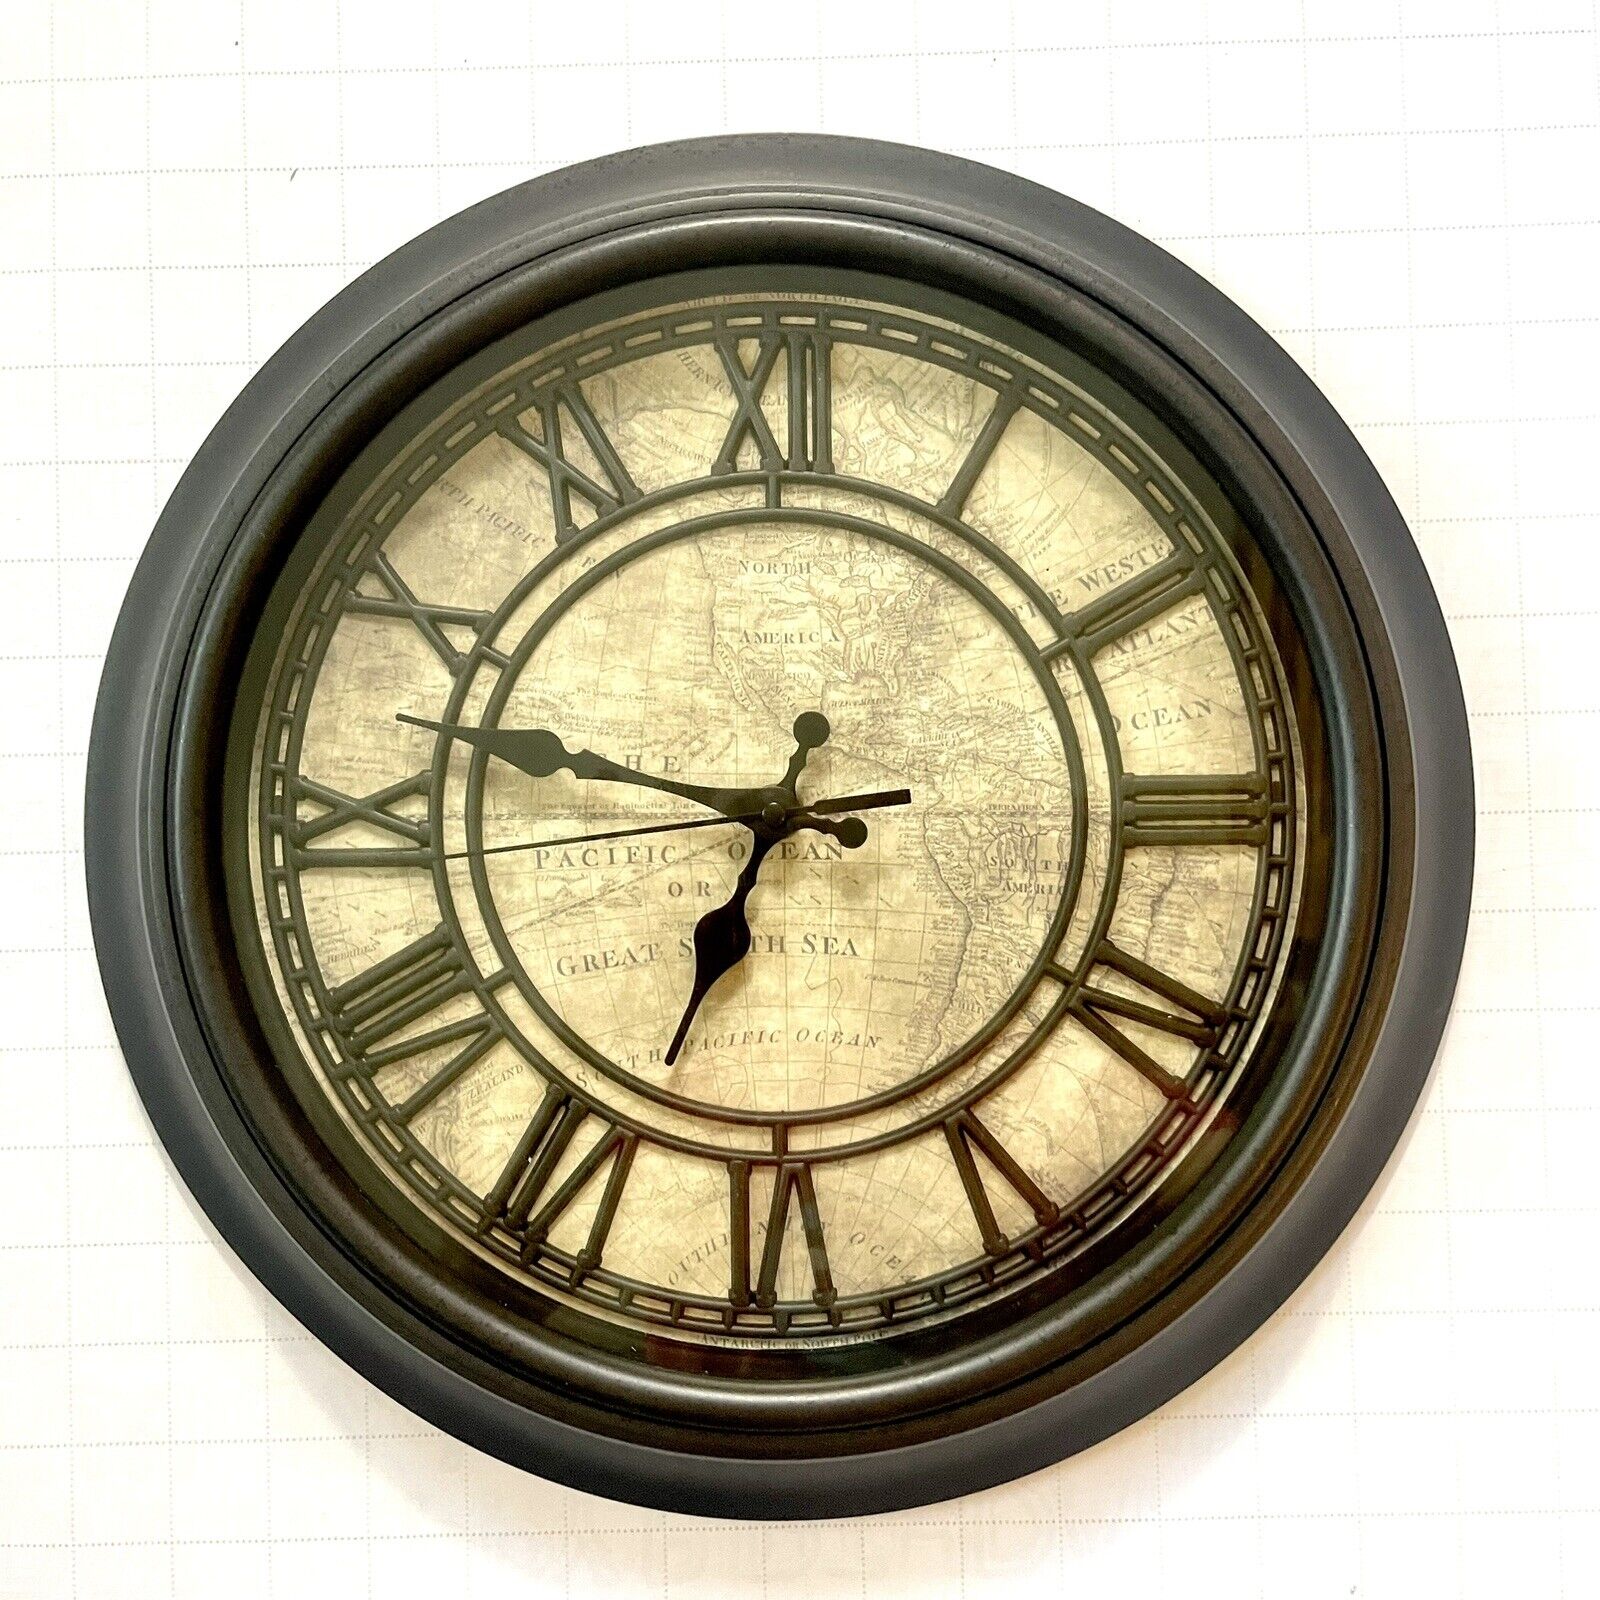 Vintage Wall Clock Hanging Big 14” Round Battery Used Vintage Brown